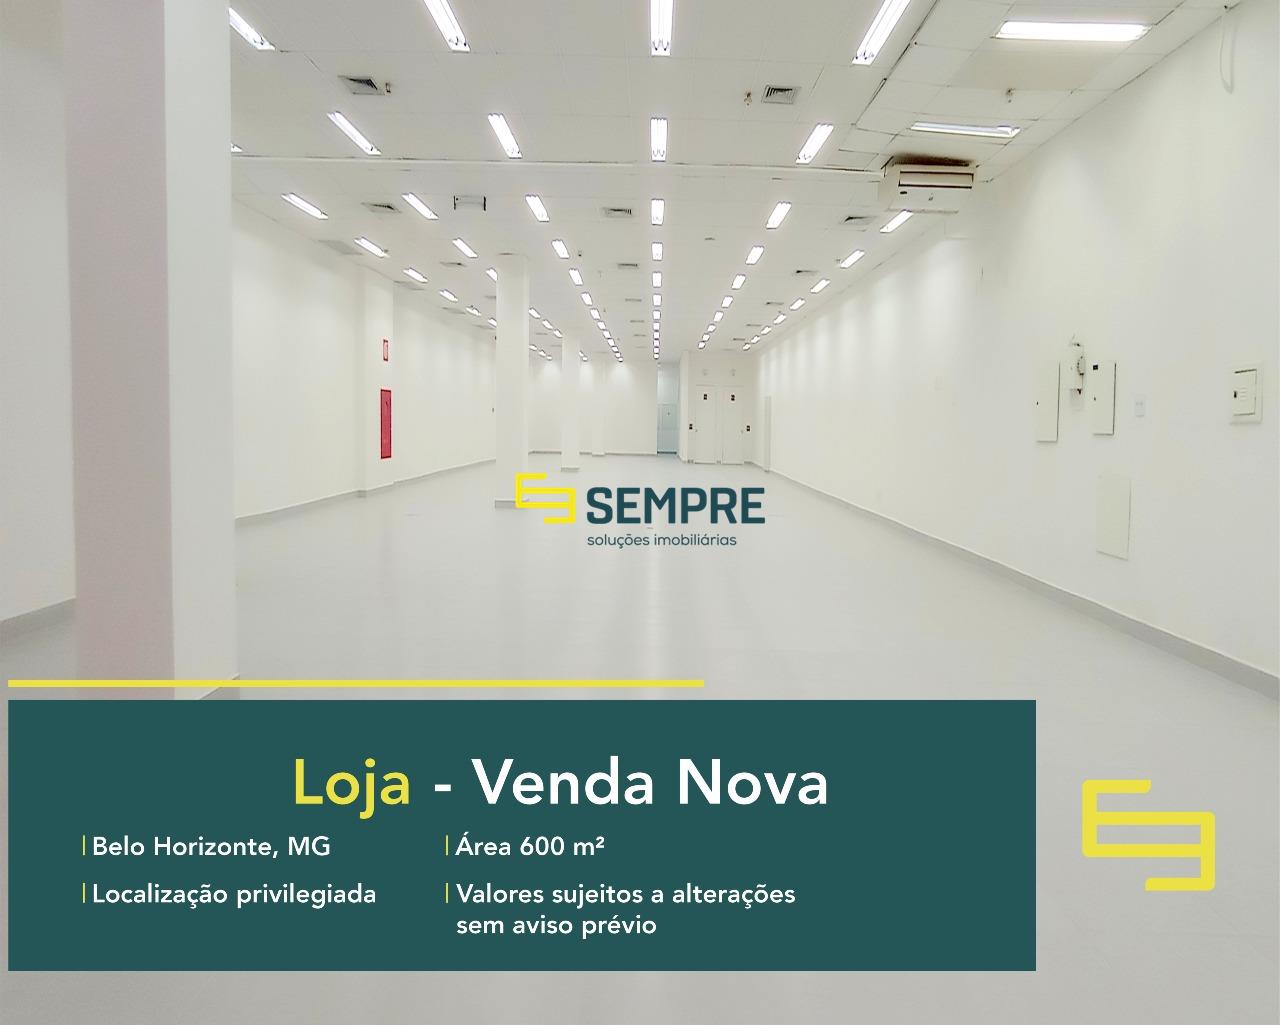 Loja para alugar em Venda Nova - Belo Horizonte, excelente localização. O estabelecimento comercial conta, sobretudo, com área de 600 m².